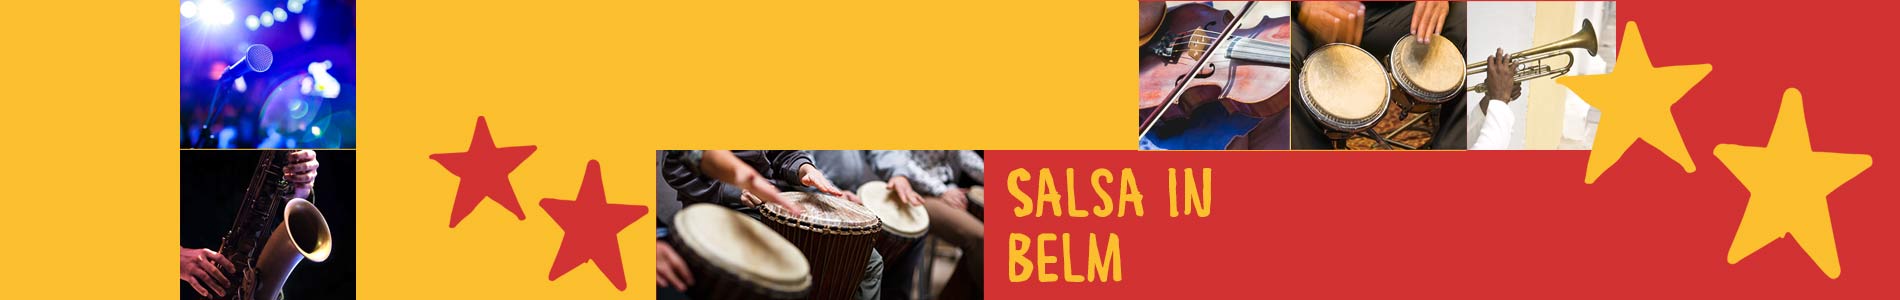 Salsa in Belm – Salsa lernen und tanzen, Tanzkurse, Partys, Veranstaltungen